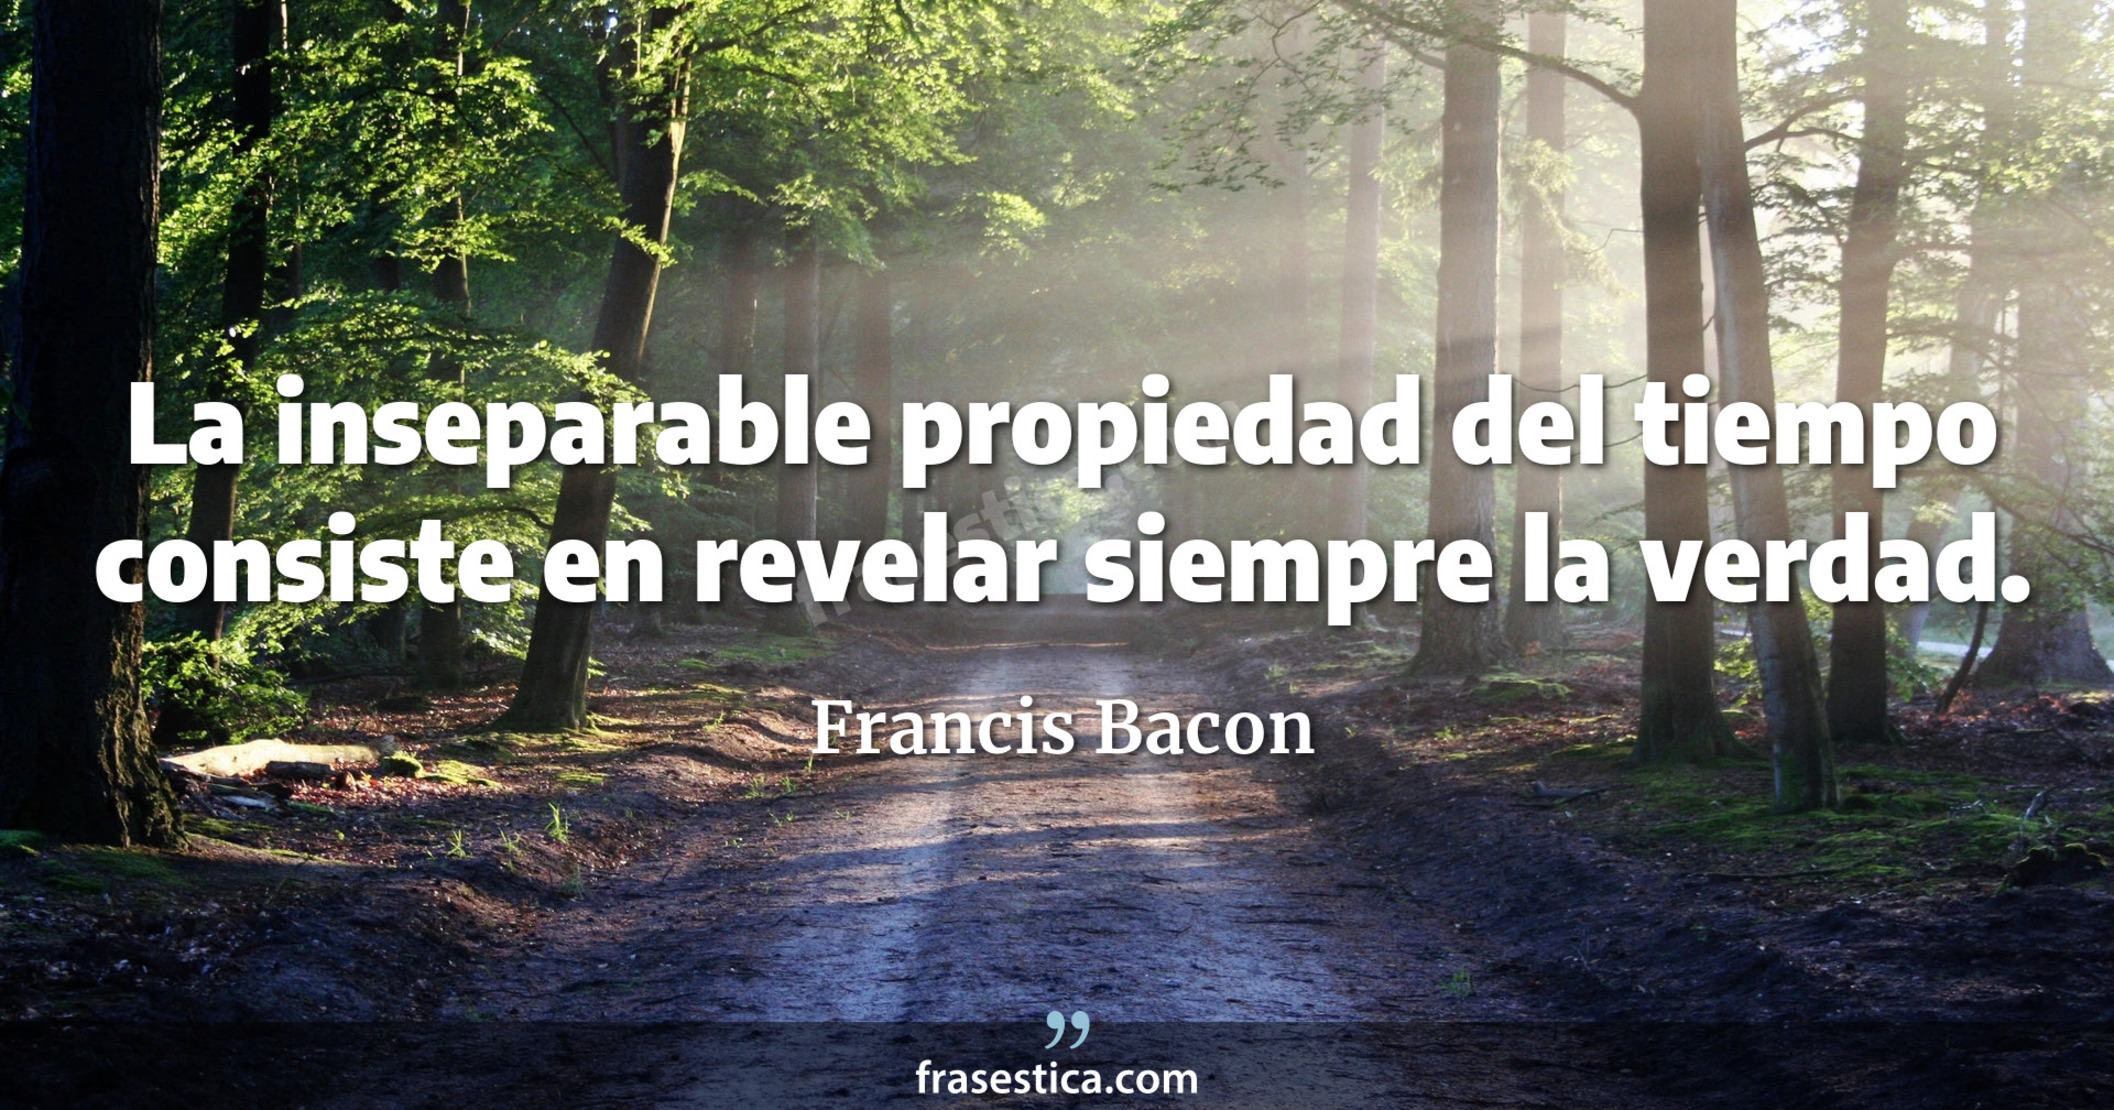 La inseparable propiedad del tiempo consiste en revelar siempre la verdad. - Francis Bacon